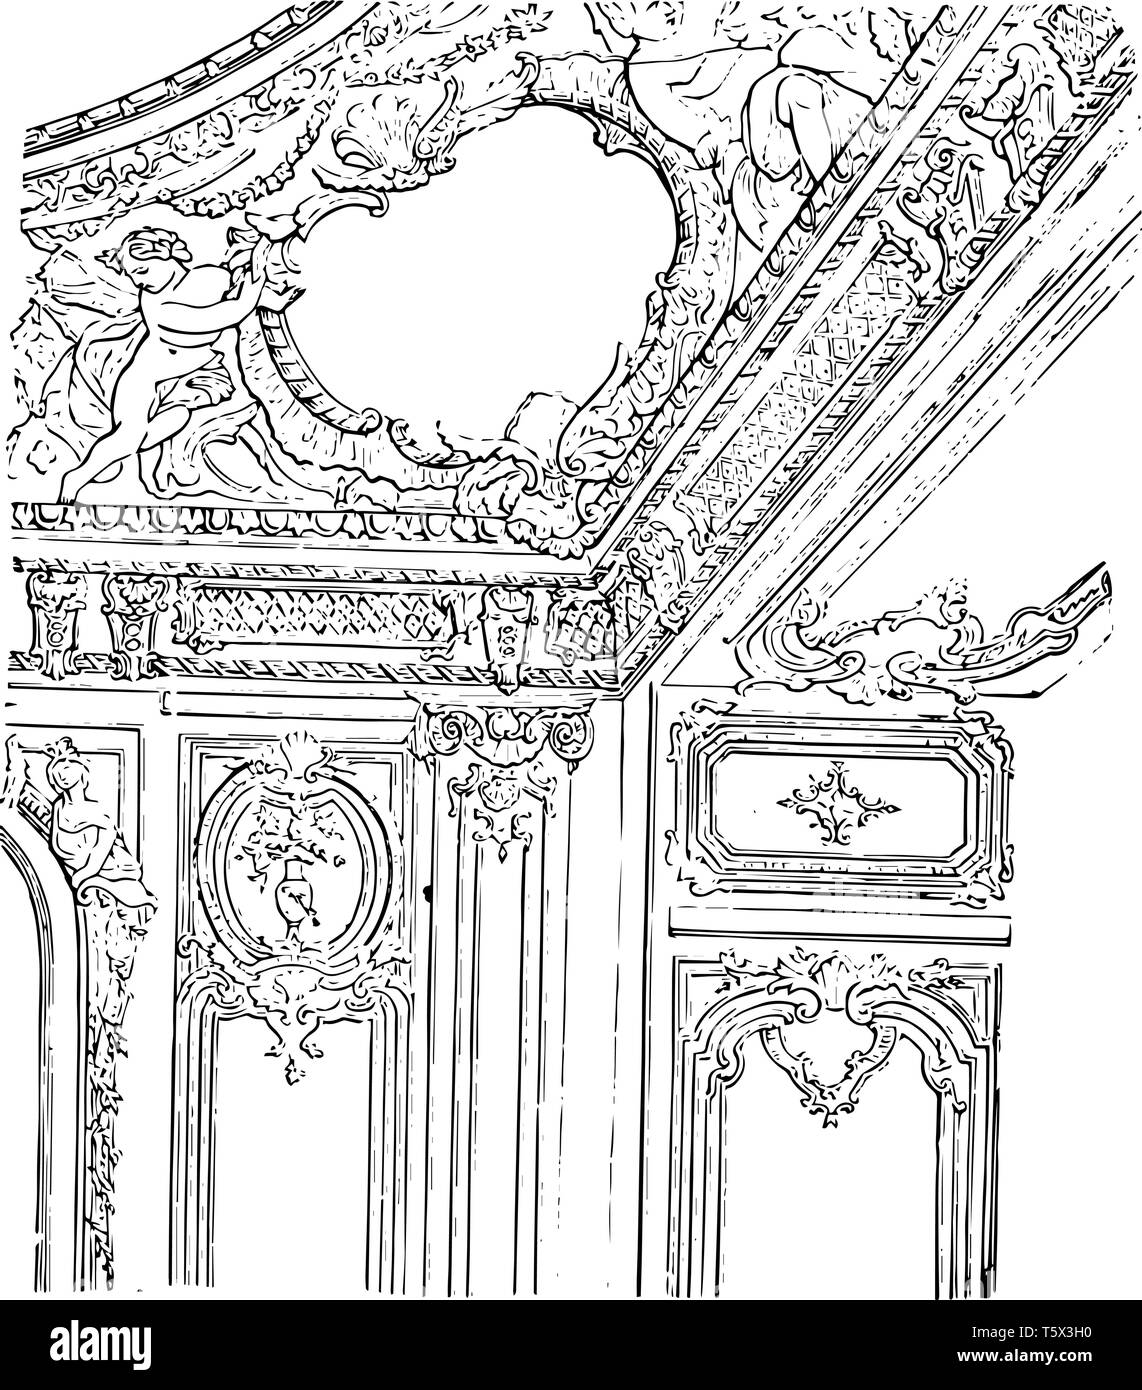 Salon im Schloss von Versailles gestaltete Decke mansion Architektur zimmer Versailles Wanddekoration vintage Strichzeichnung oder Gravur illustrati Stock Vektor